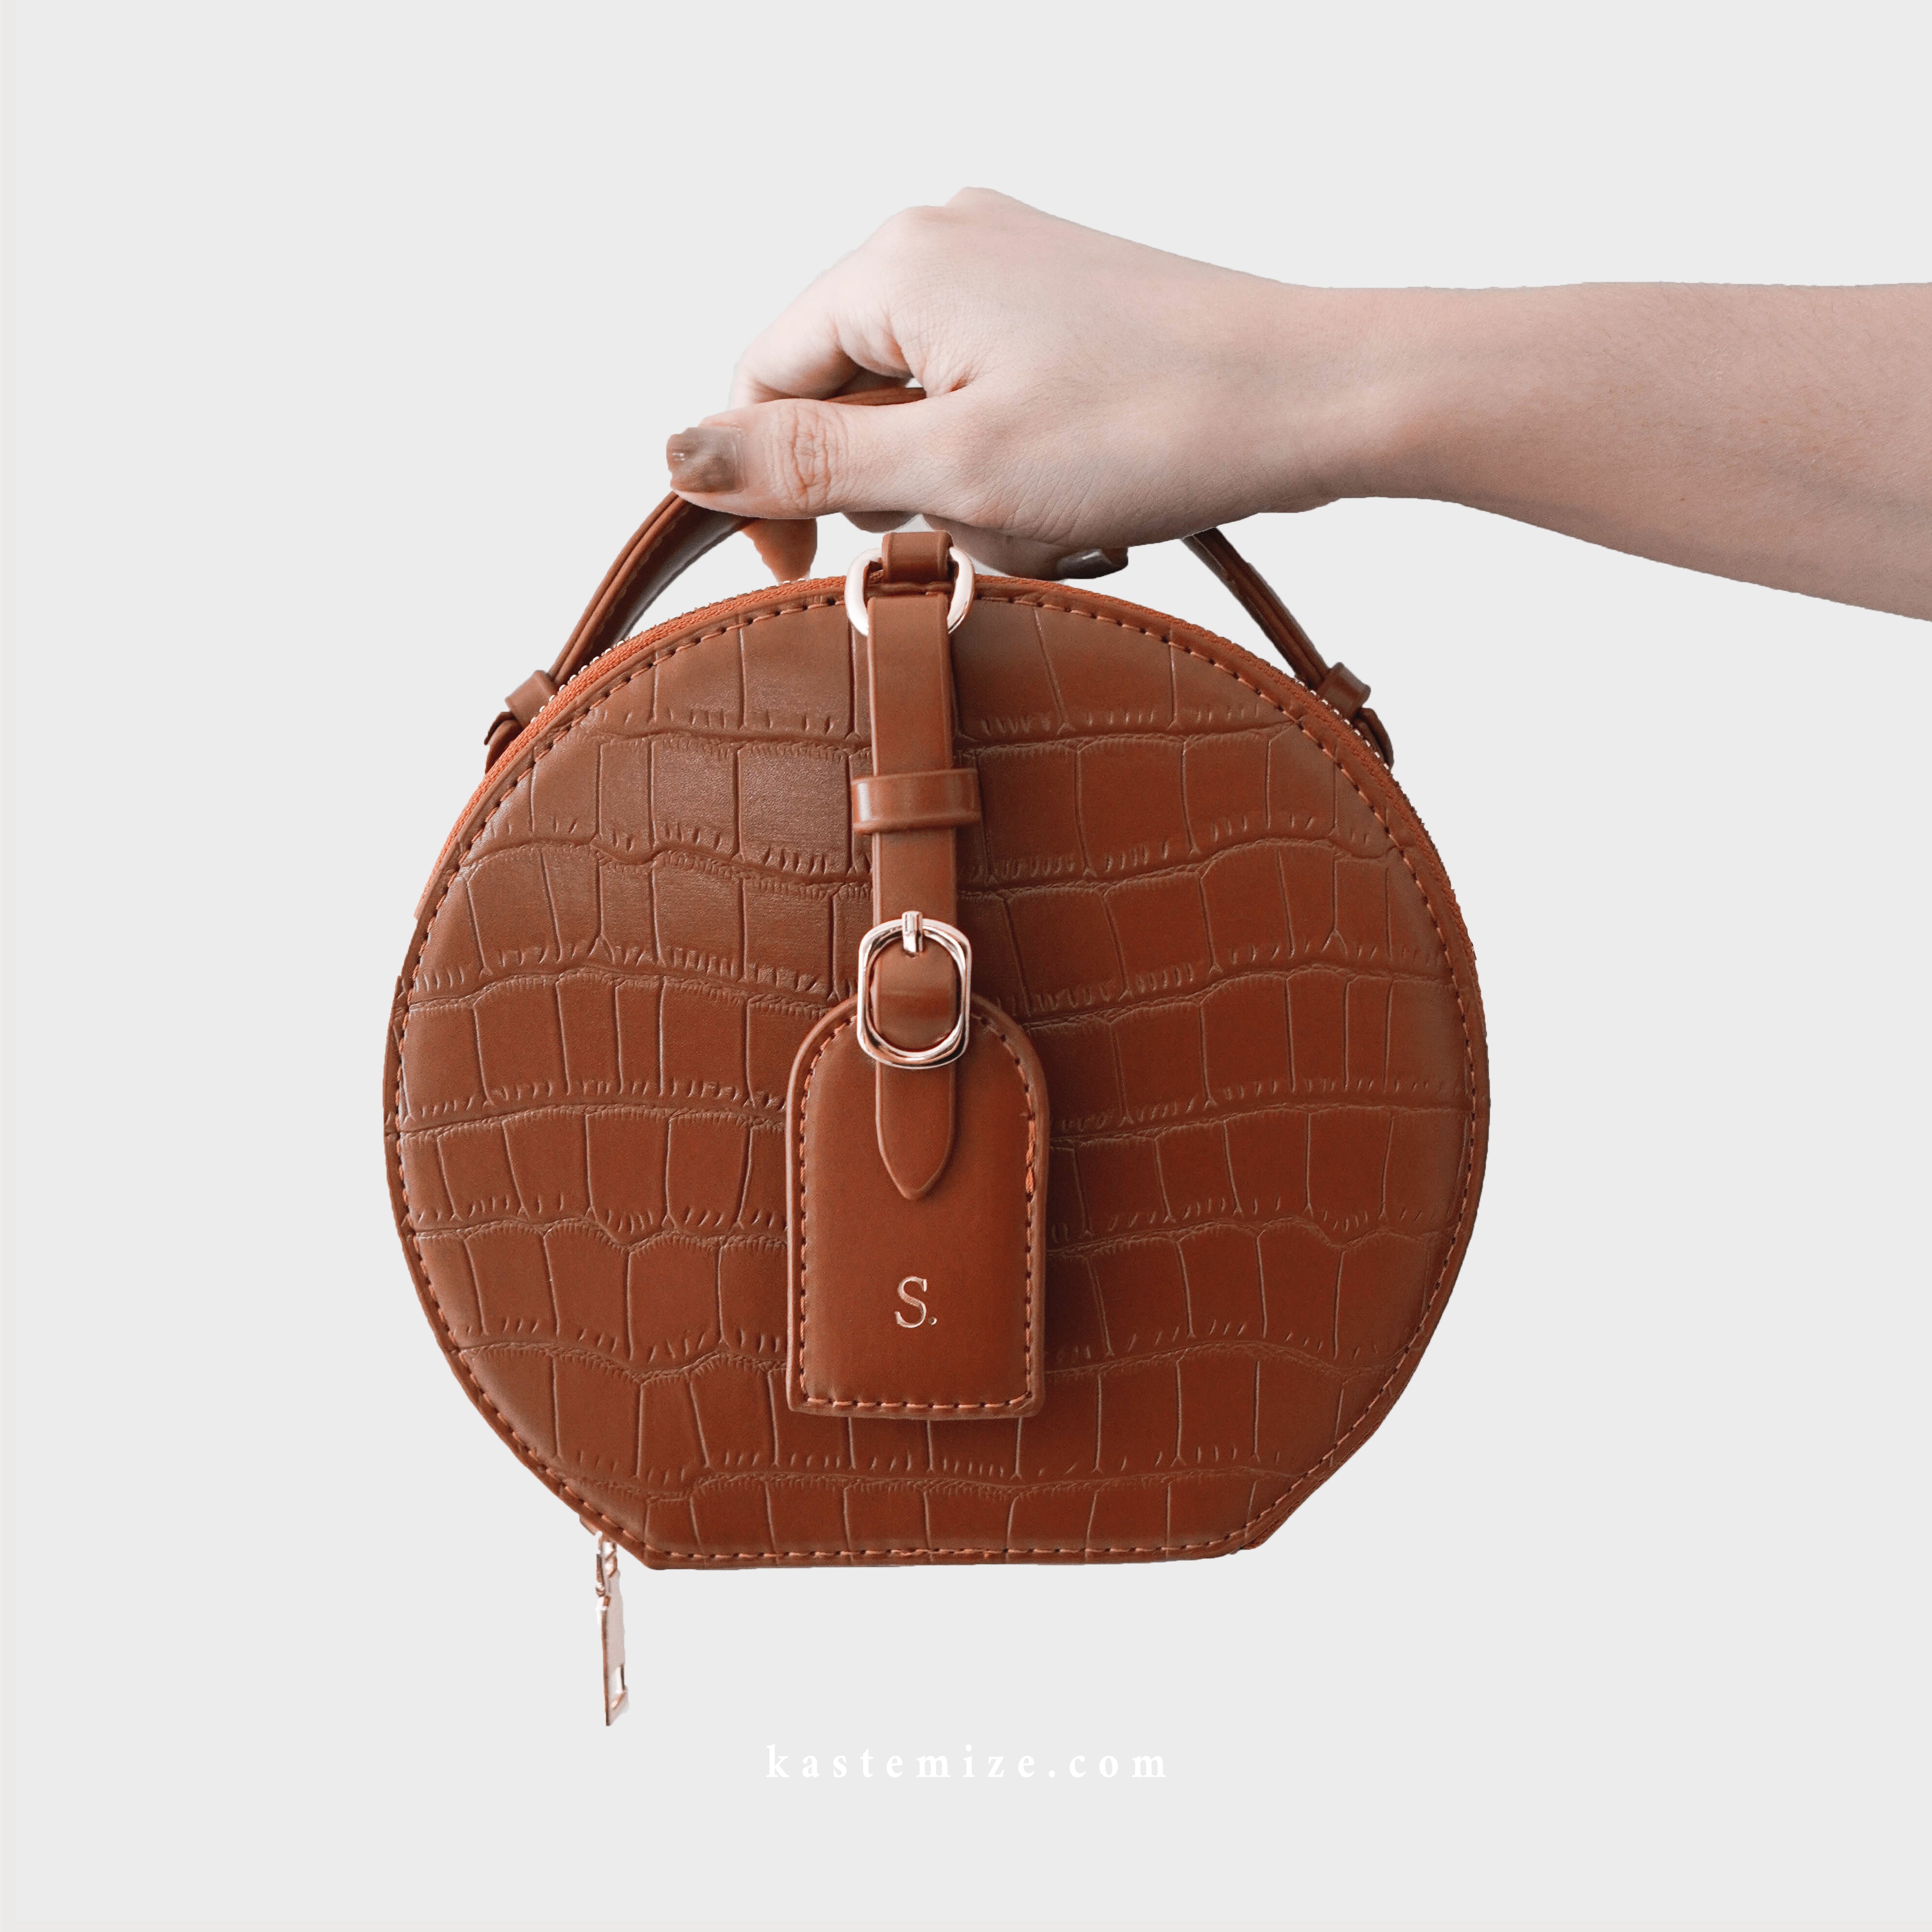 Olivia Round Shoulder Bag in Brown - Kastemize